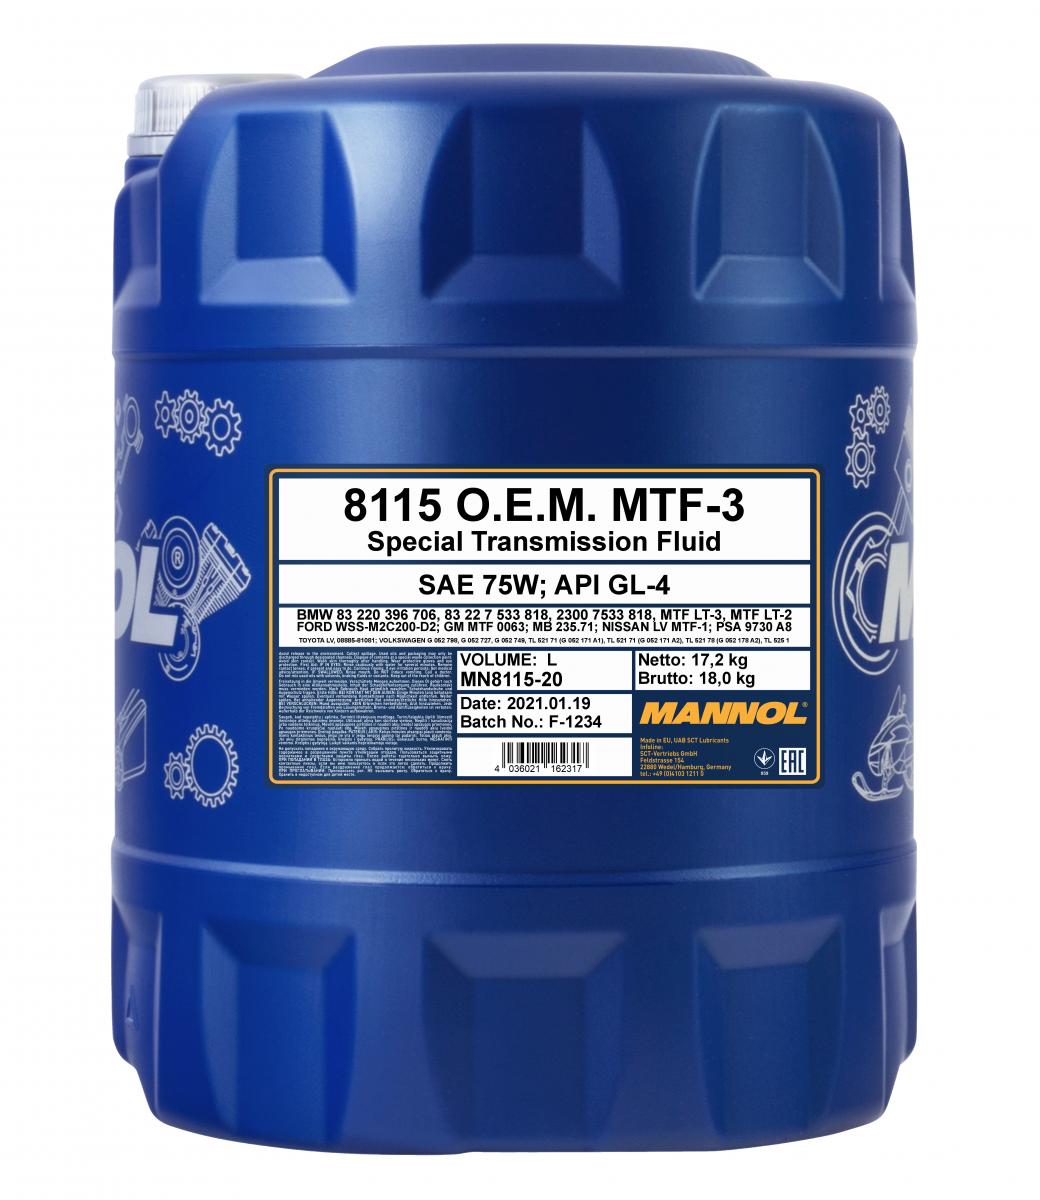 20 Liter Mannol Transmissieolie MTF-3 - € 89,95